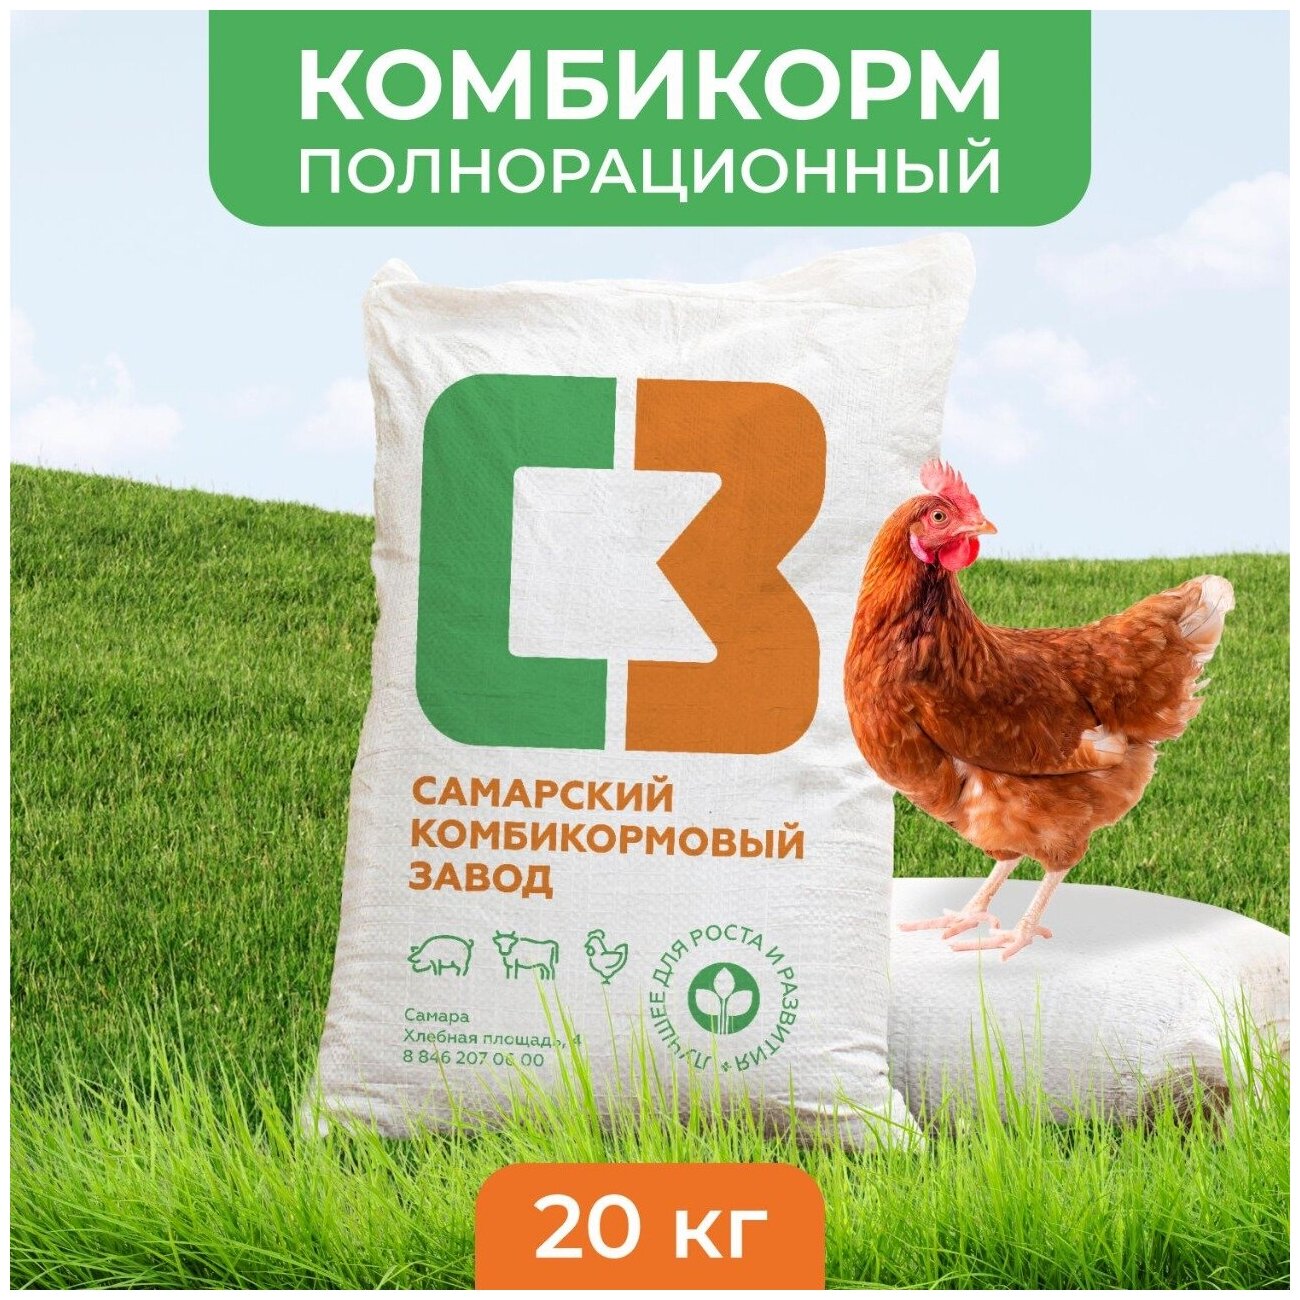 Комбикорм полнорационный ПК-1-2 для курицы-несушки, СКЗ, 20 кг, гранула